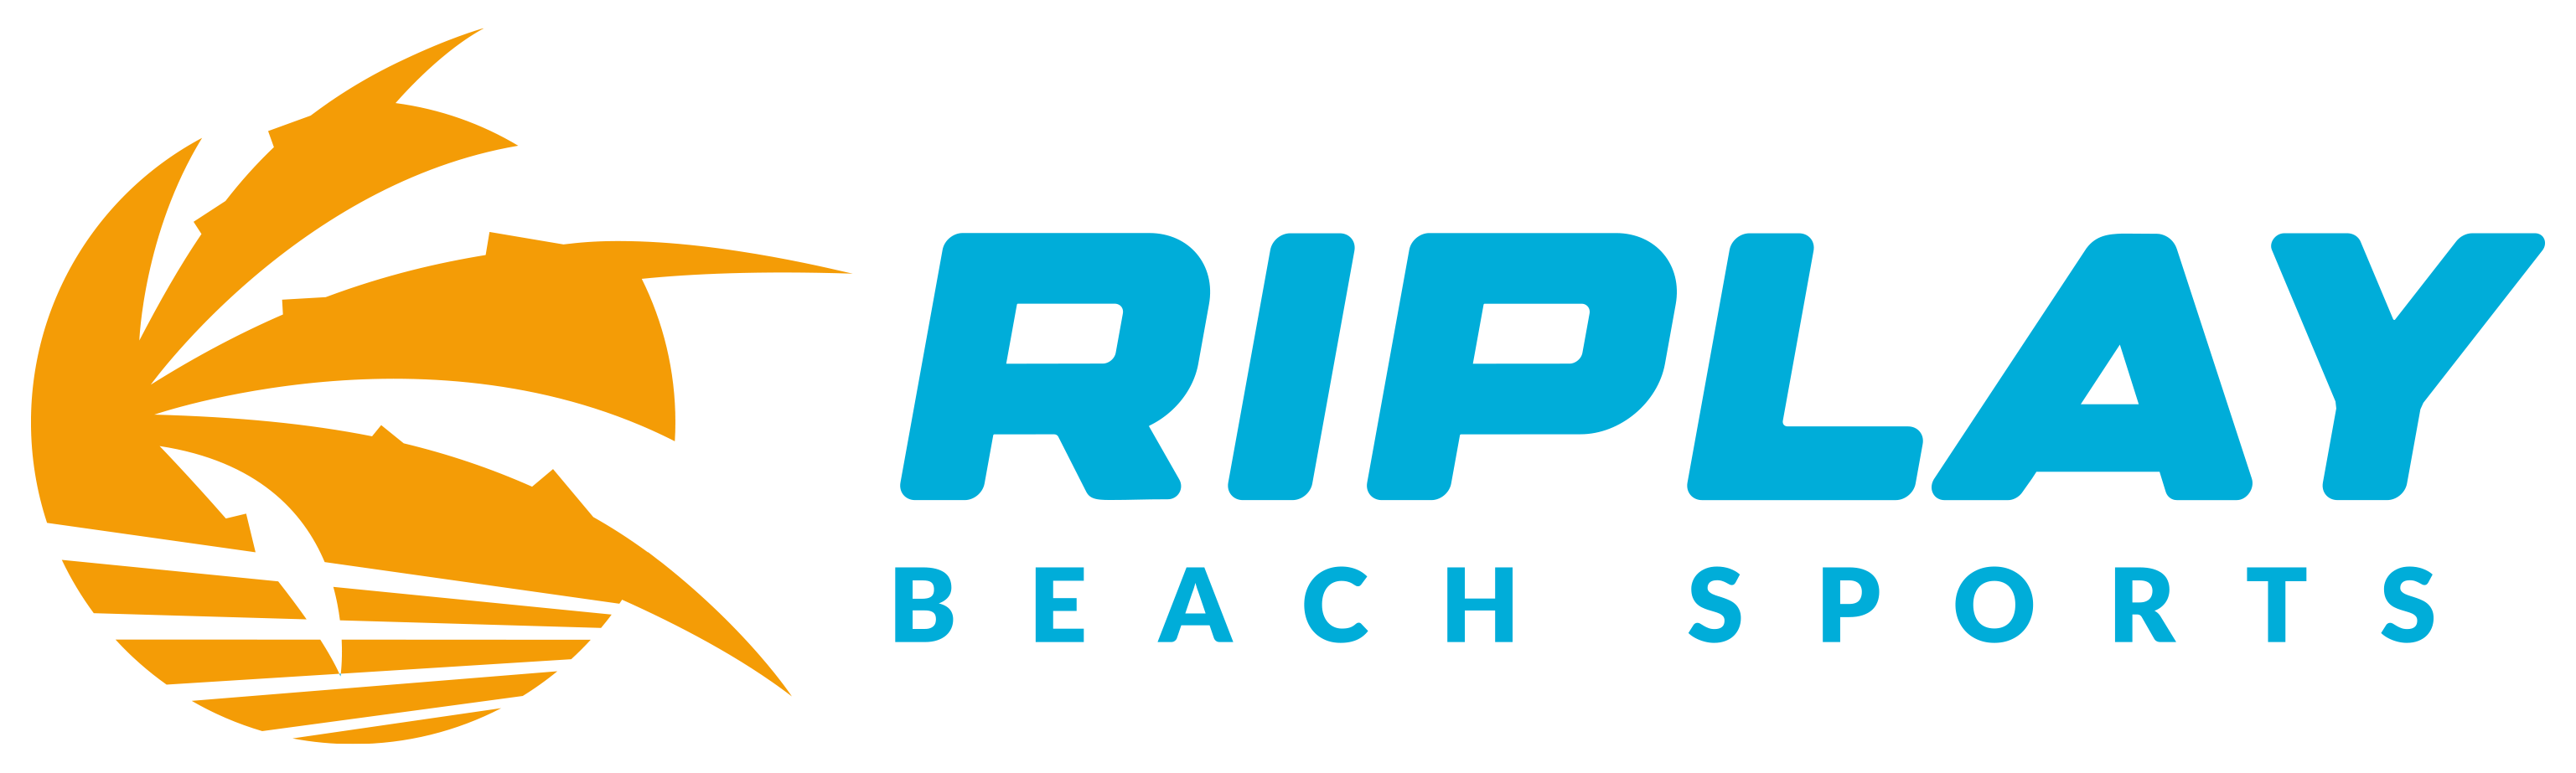 Riplay Beach Sports